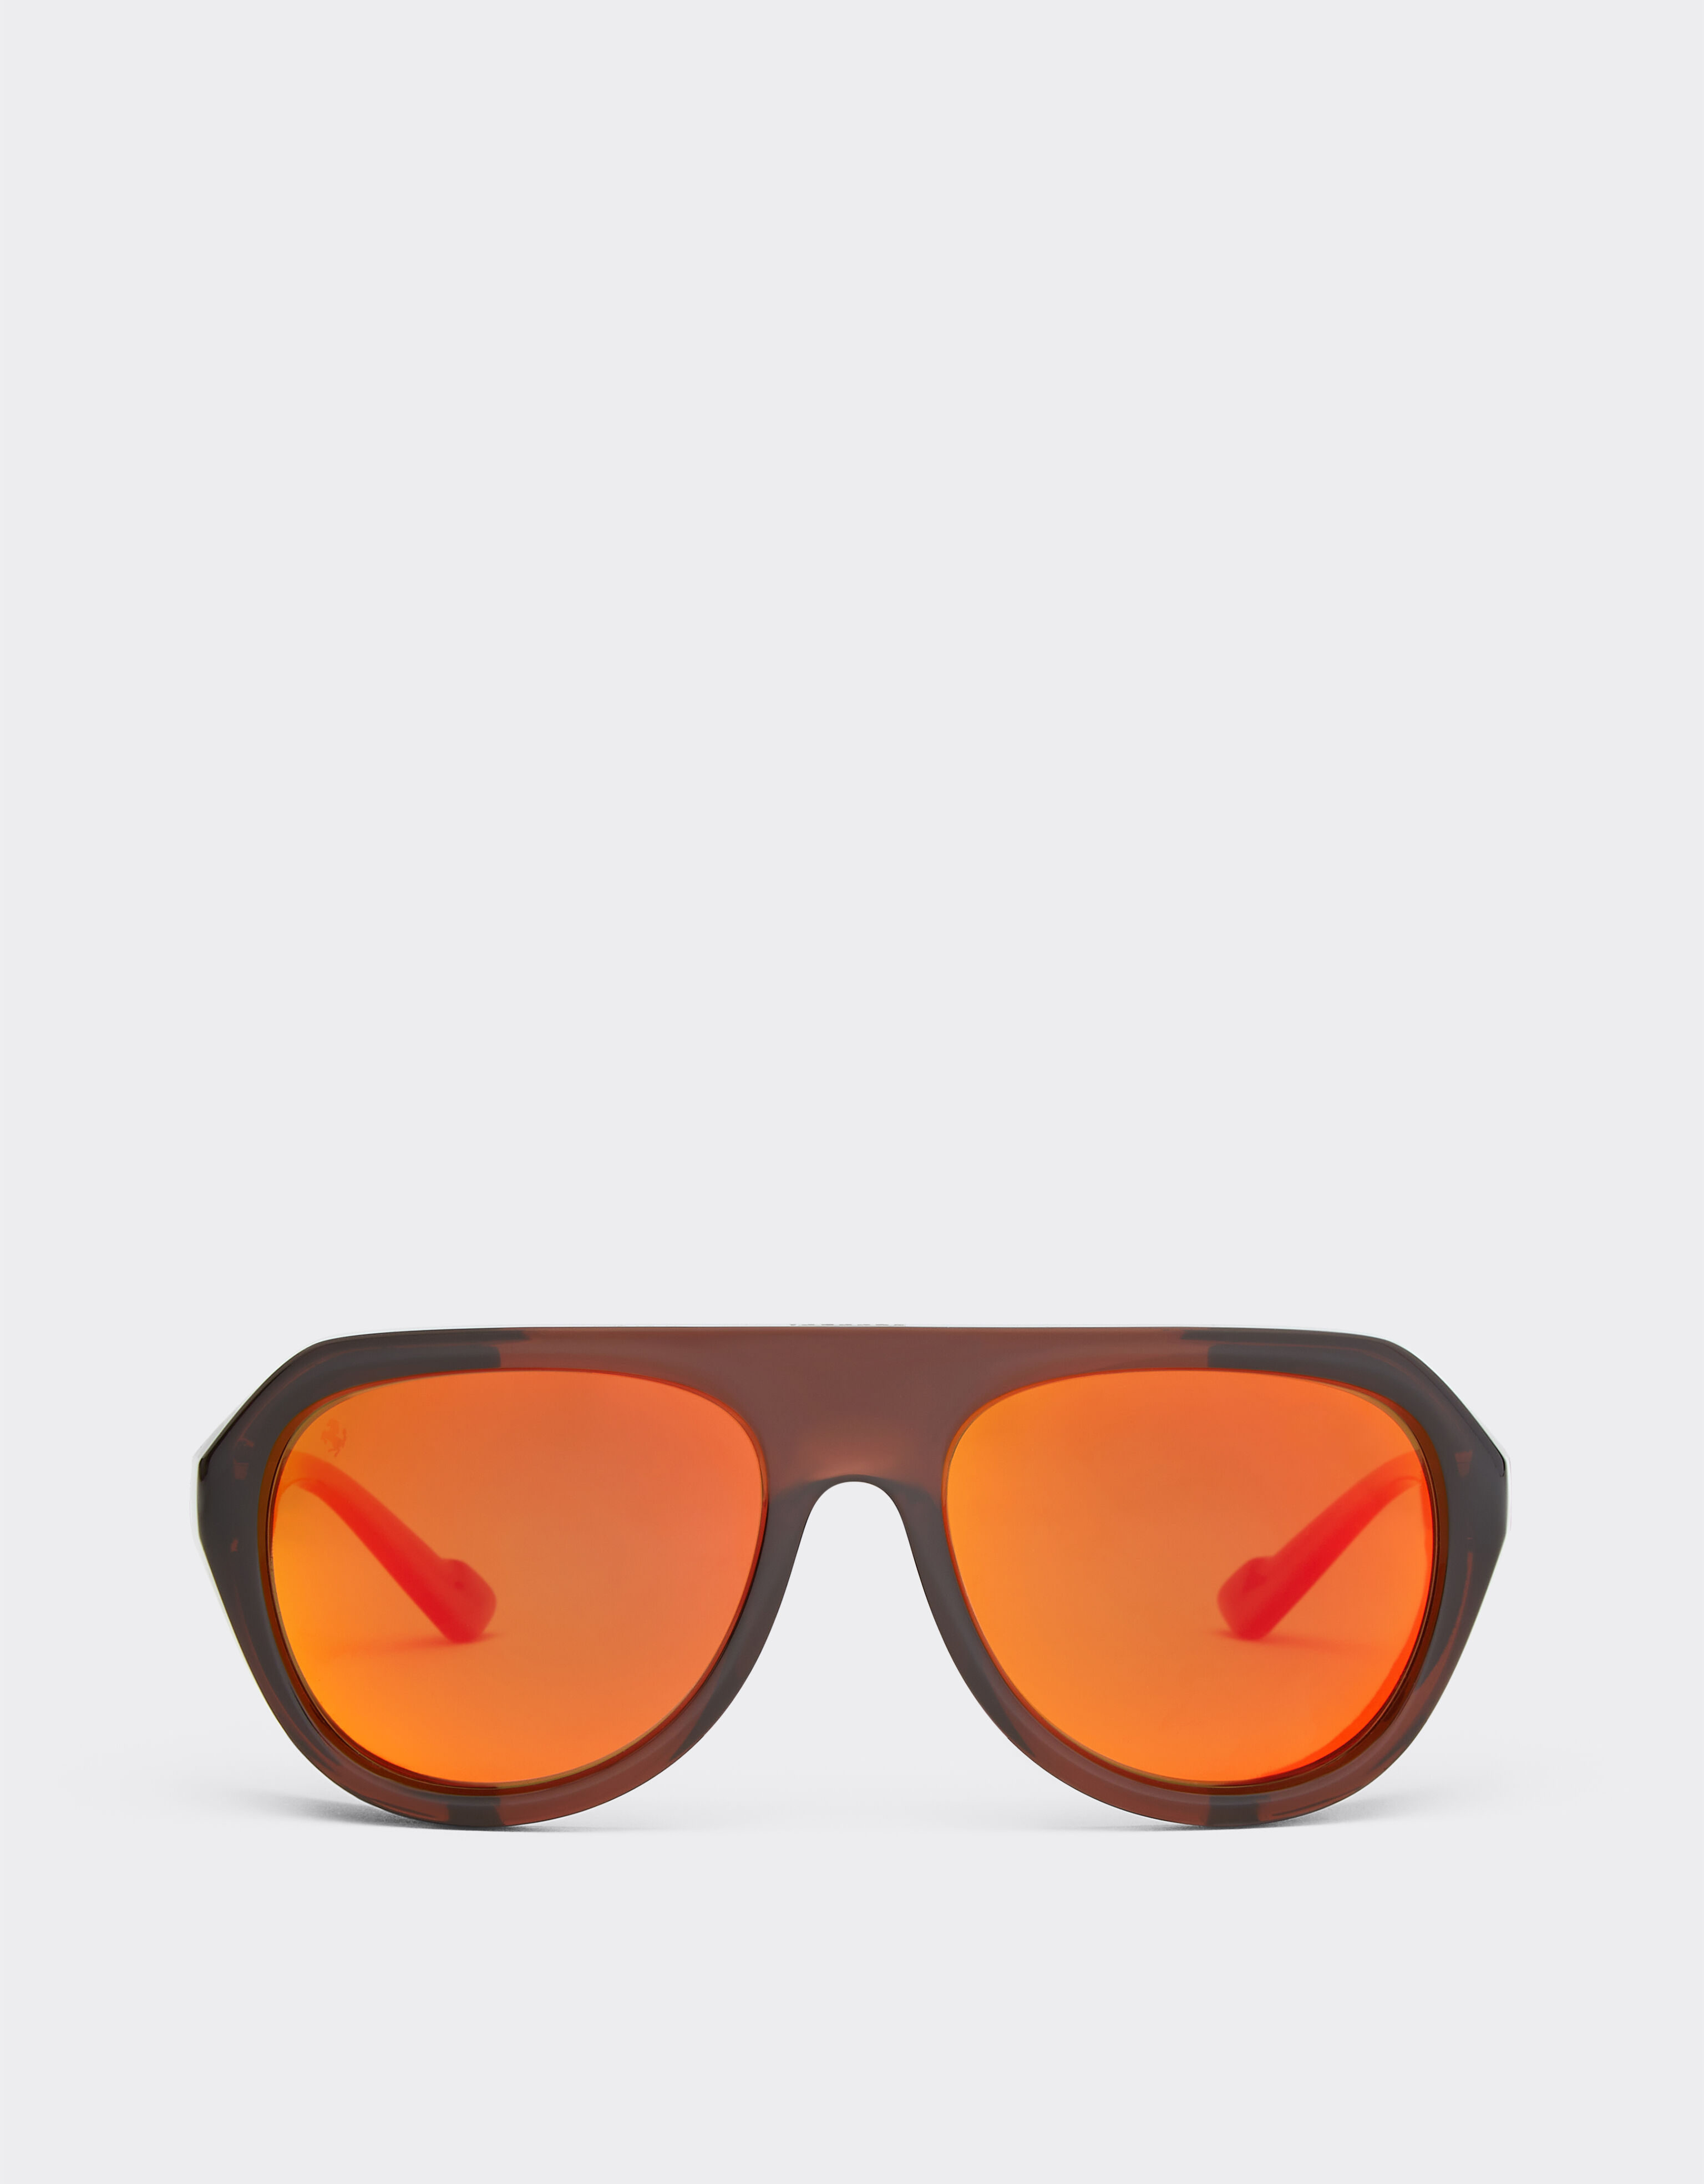 Ferrari Ferrari brown sunglasses with leather details and polarised mirror lenses Black F1201f